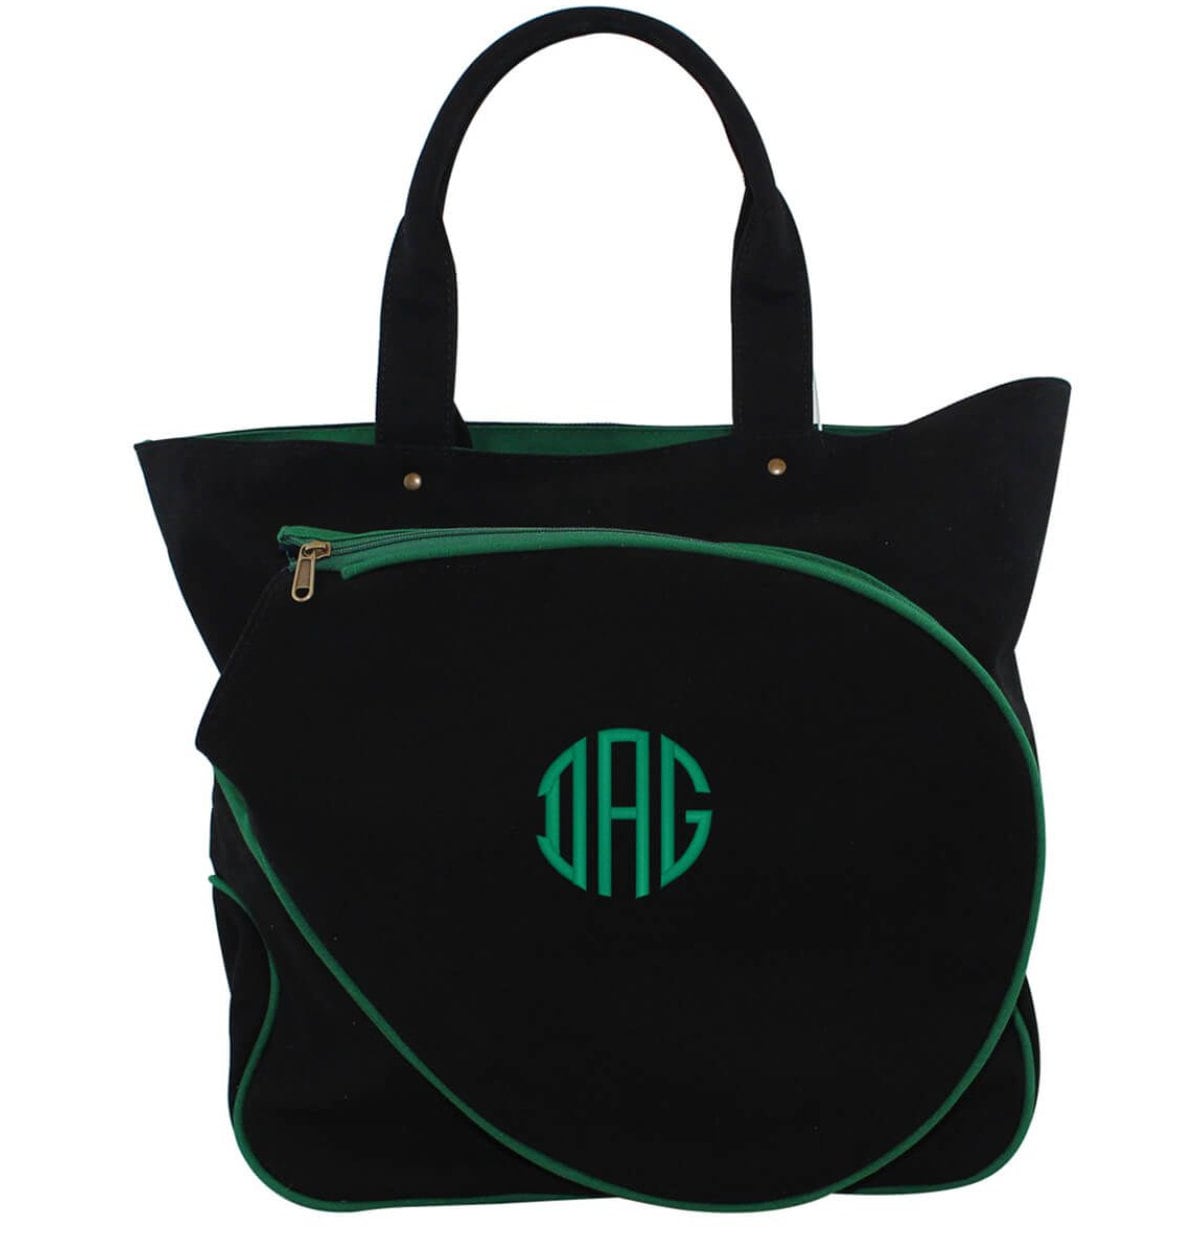 Monogrammed Tennis Bag Personalized Tennis Tote Bag Top Zip | Etsy